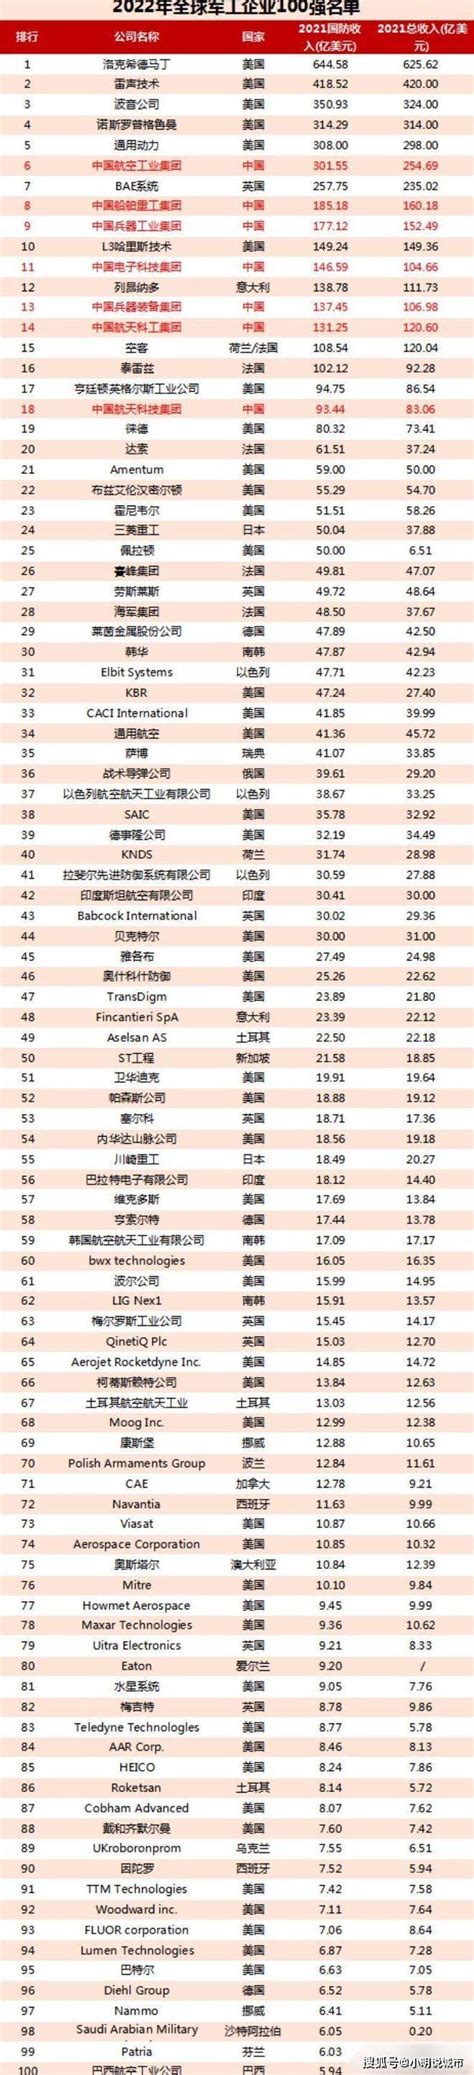 世界十大军工企业排名-波音公司上榜(军用飞机制造商)-排行榜123网